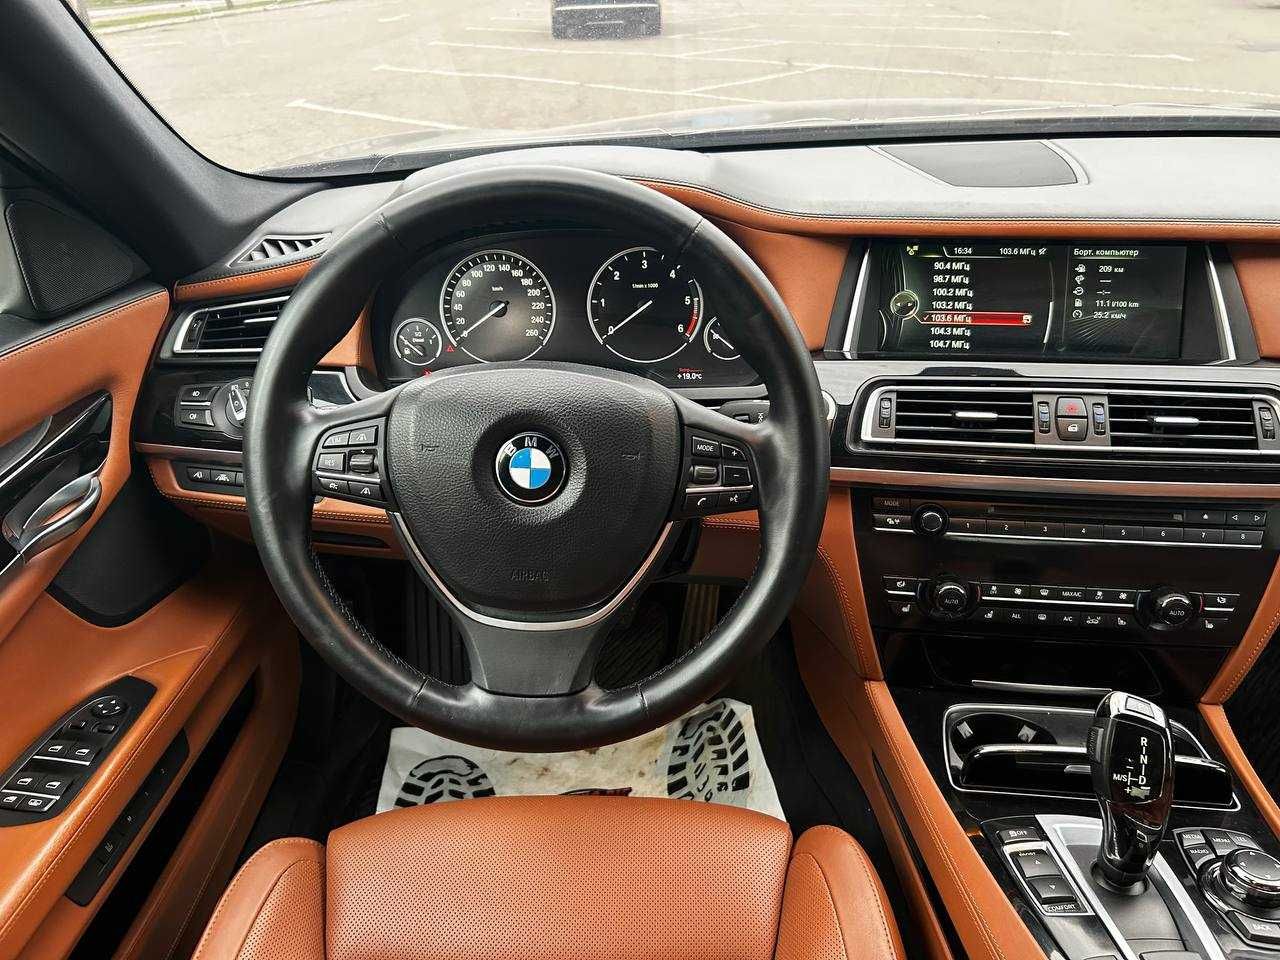 BMW 750 long, 3,0 дизель, 2012р, обмін (перший внесок від 20%)